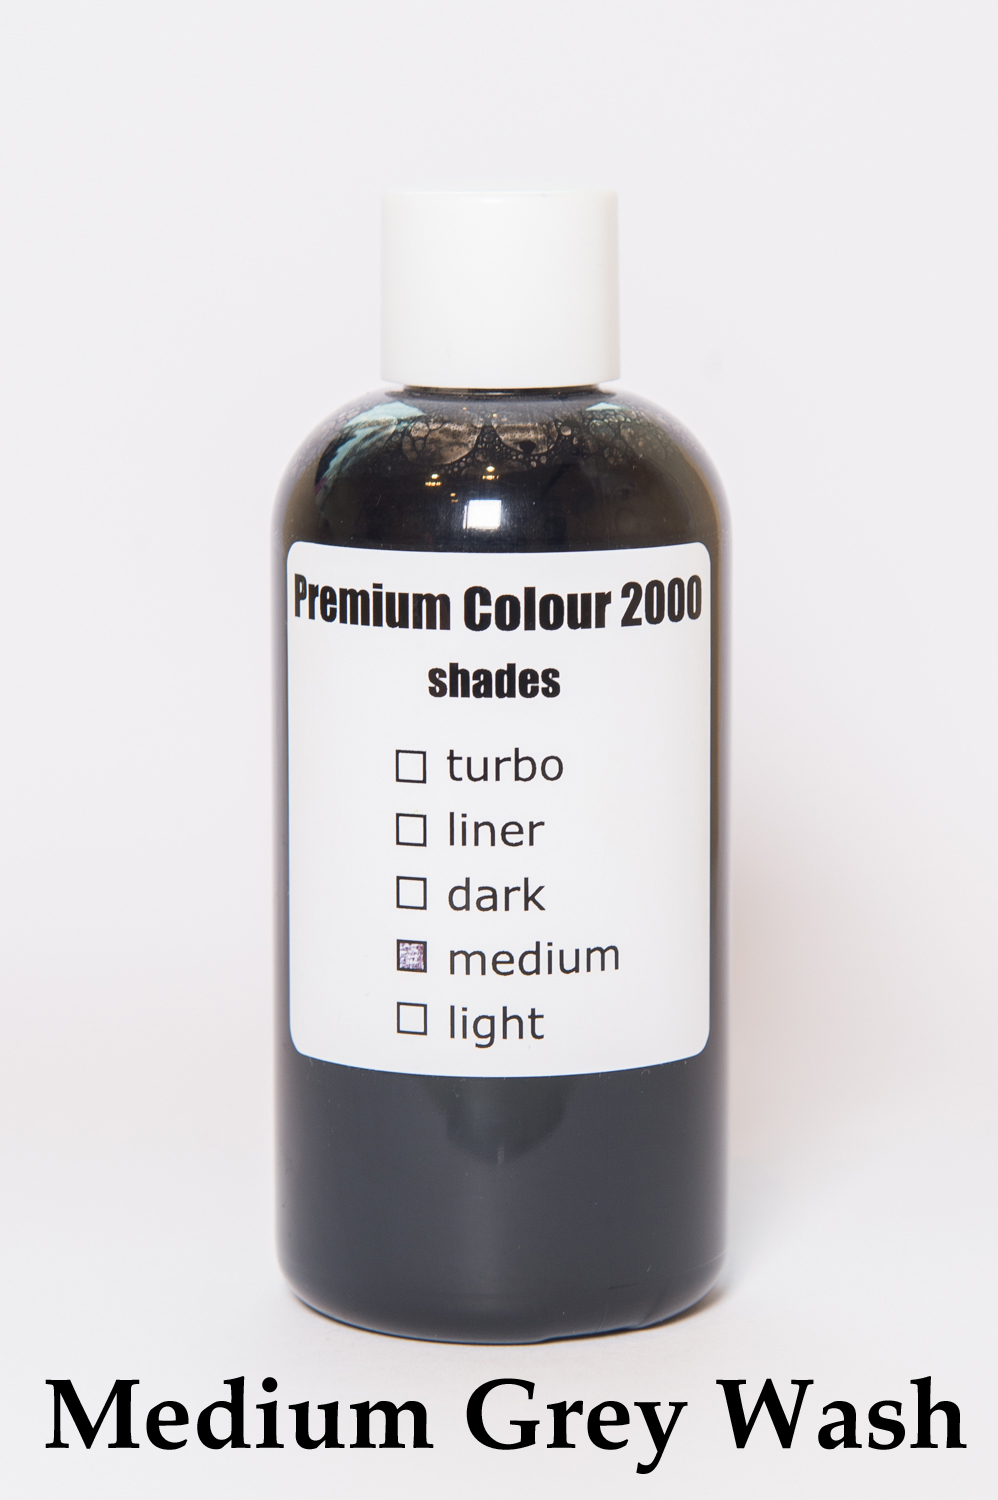 Medium Grey Wash Premium Colour 2000.jpg